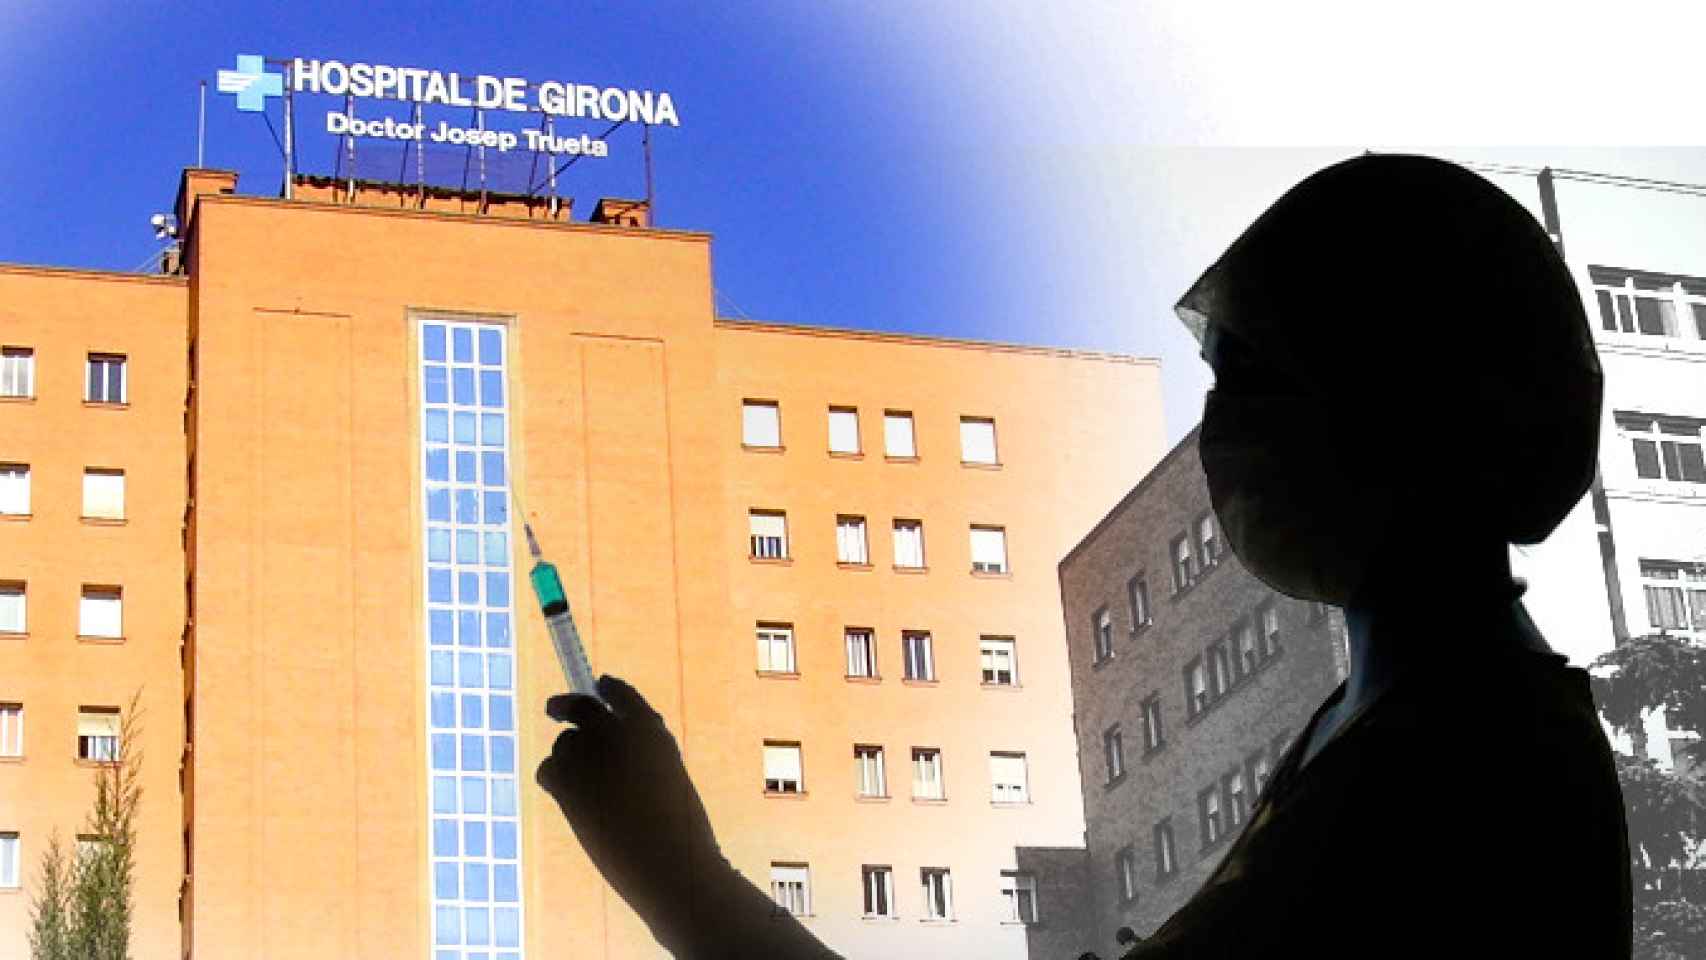 Fachada del Hospital Josep Trueta, donde una enfermera como la de la imagen lleva 20 años como eventual / CG